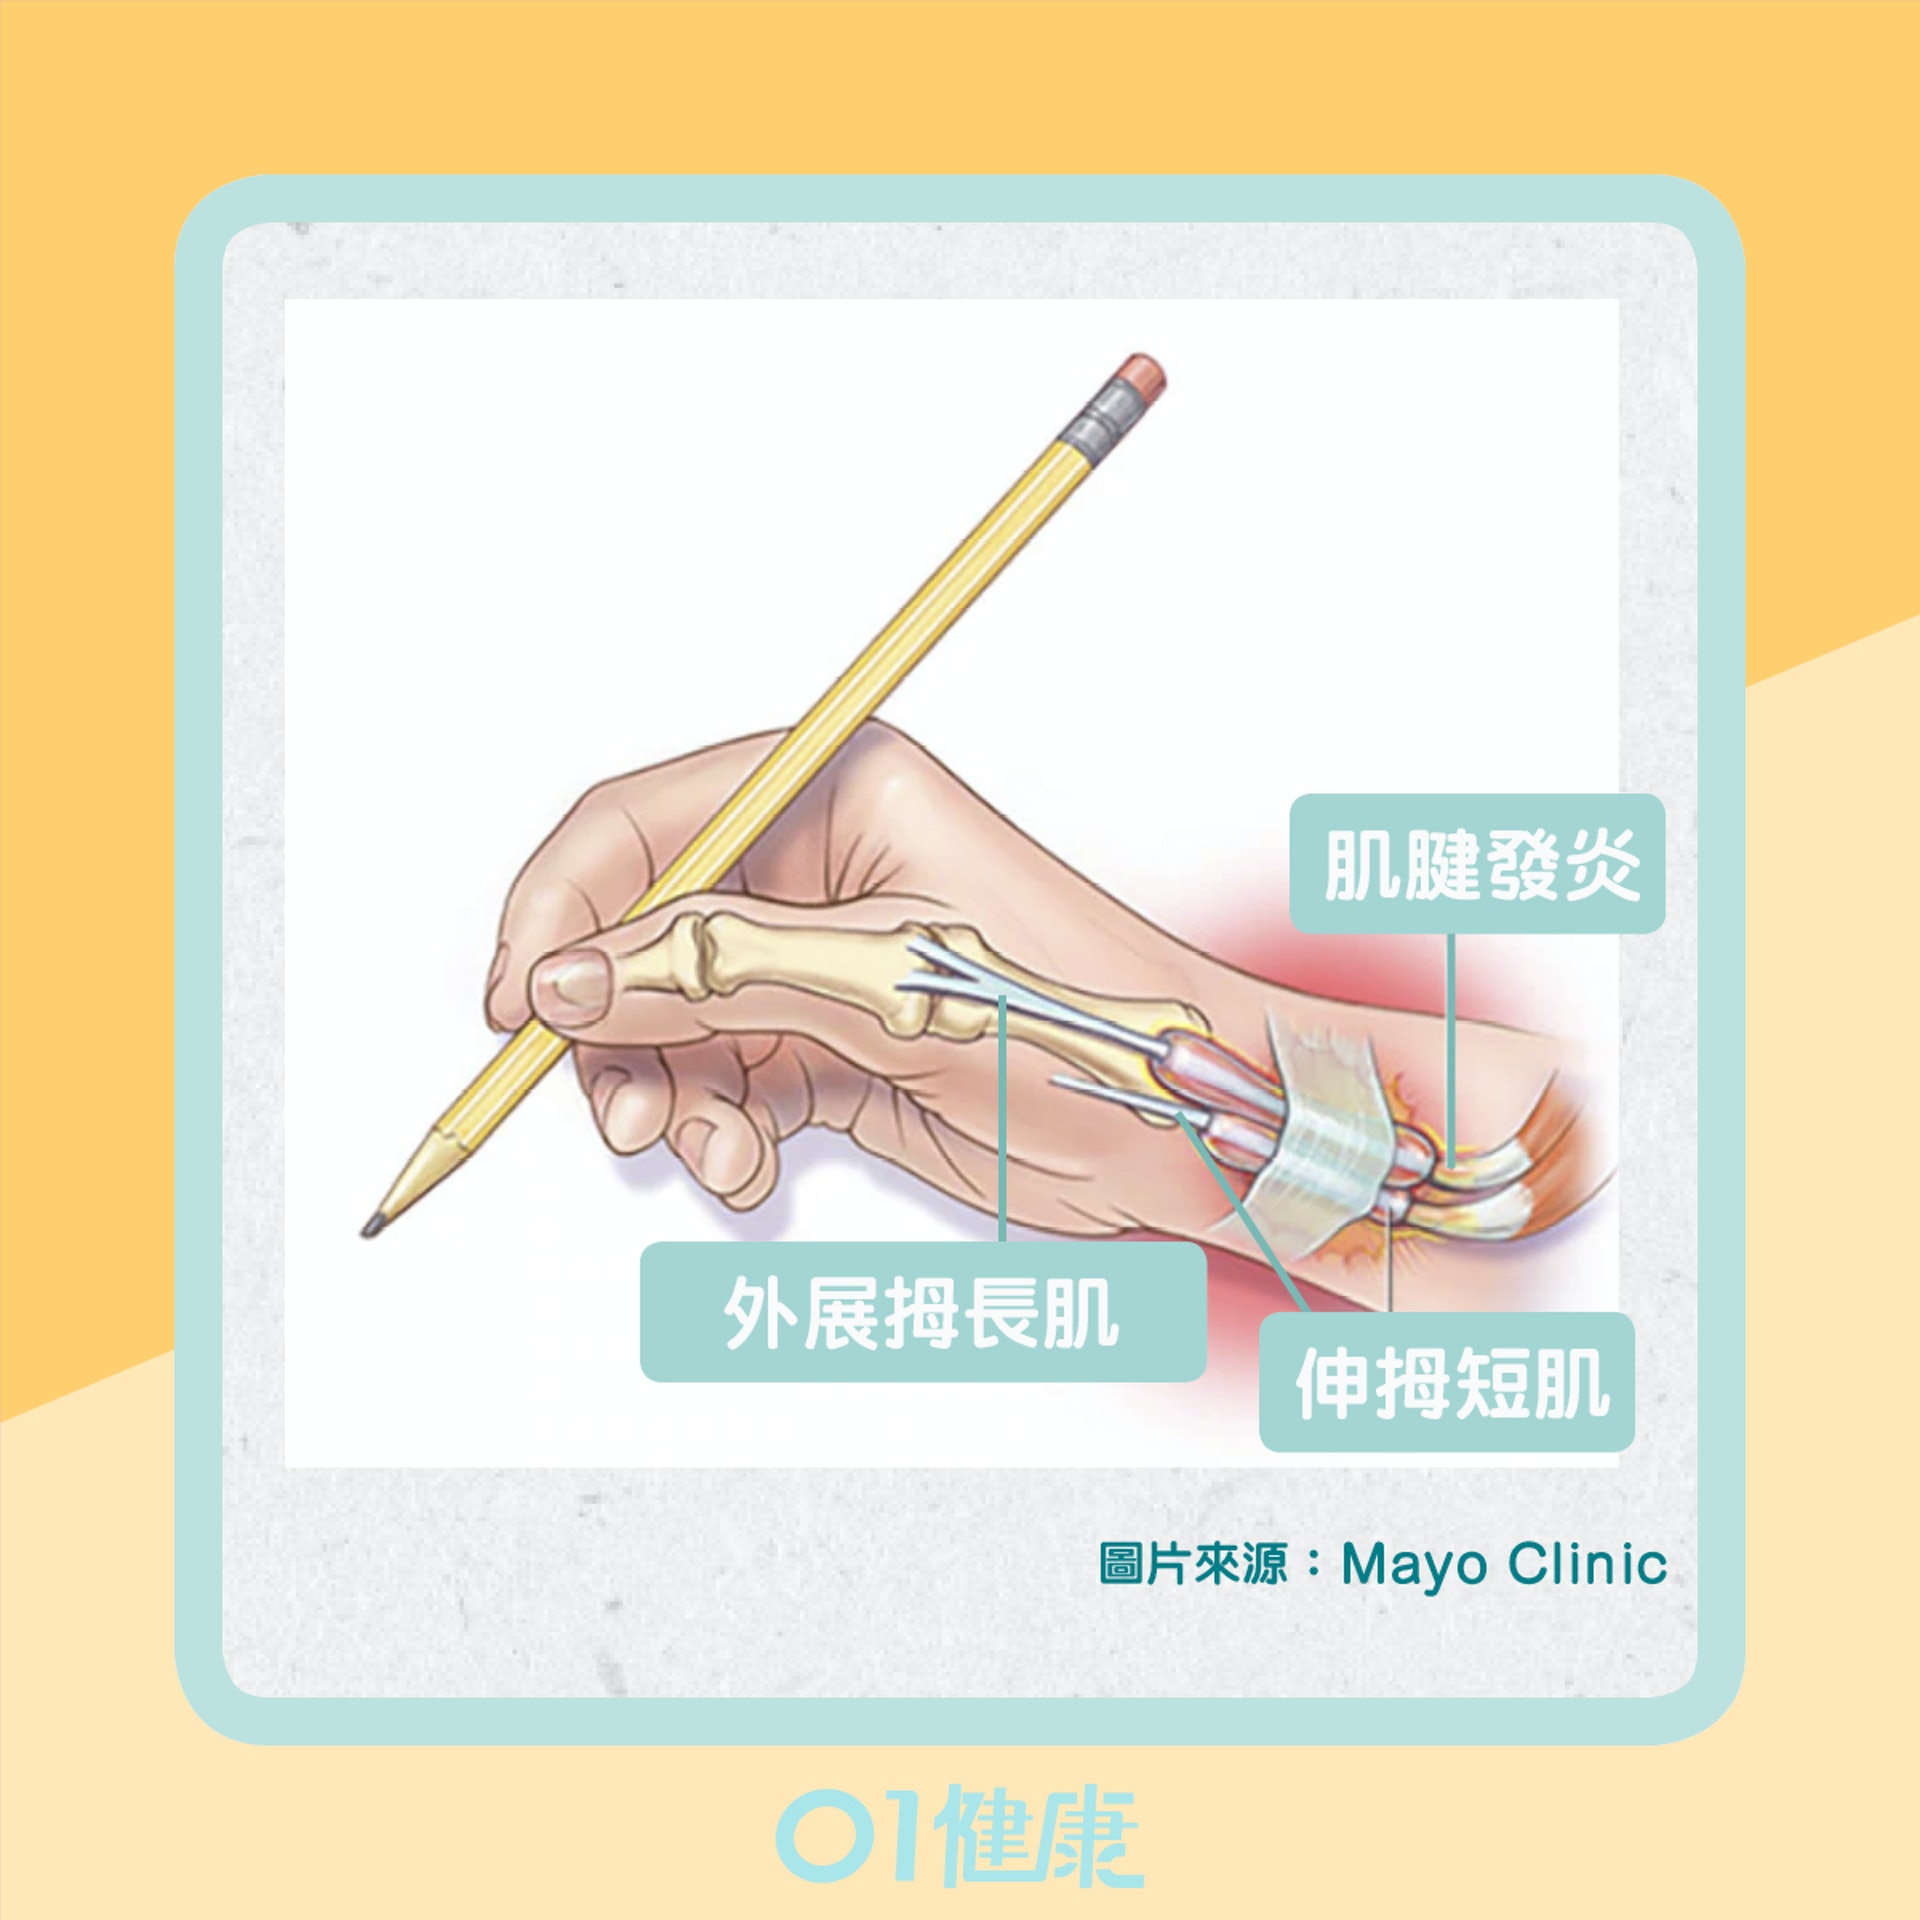 狹窄性拇指肌腱滑膜炎（01製圖）